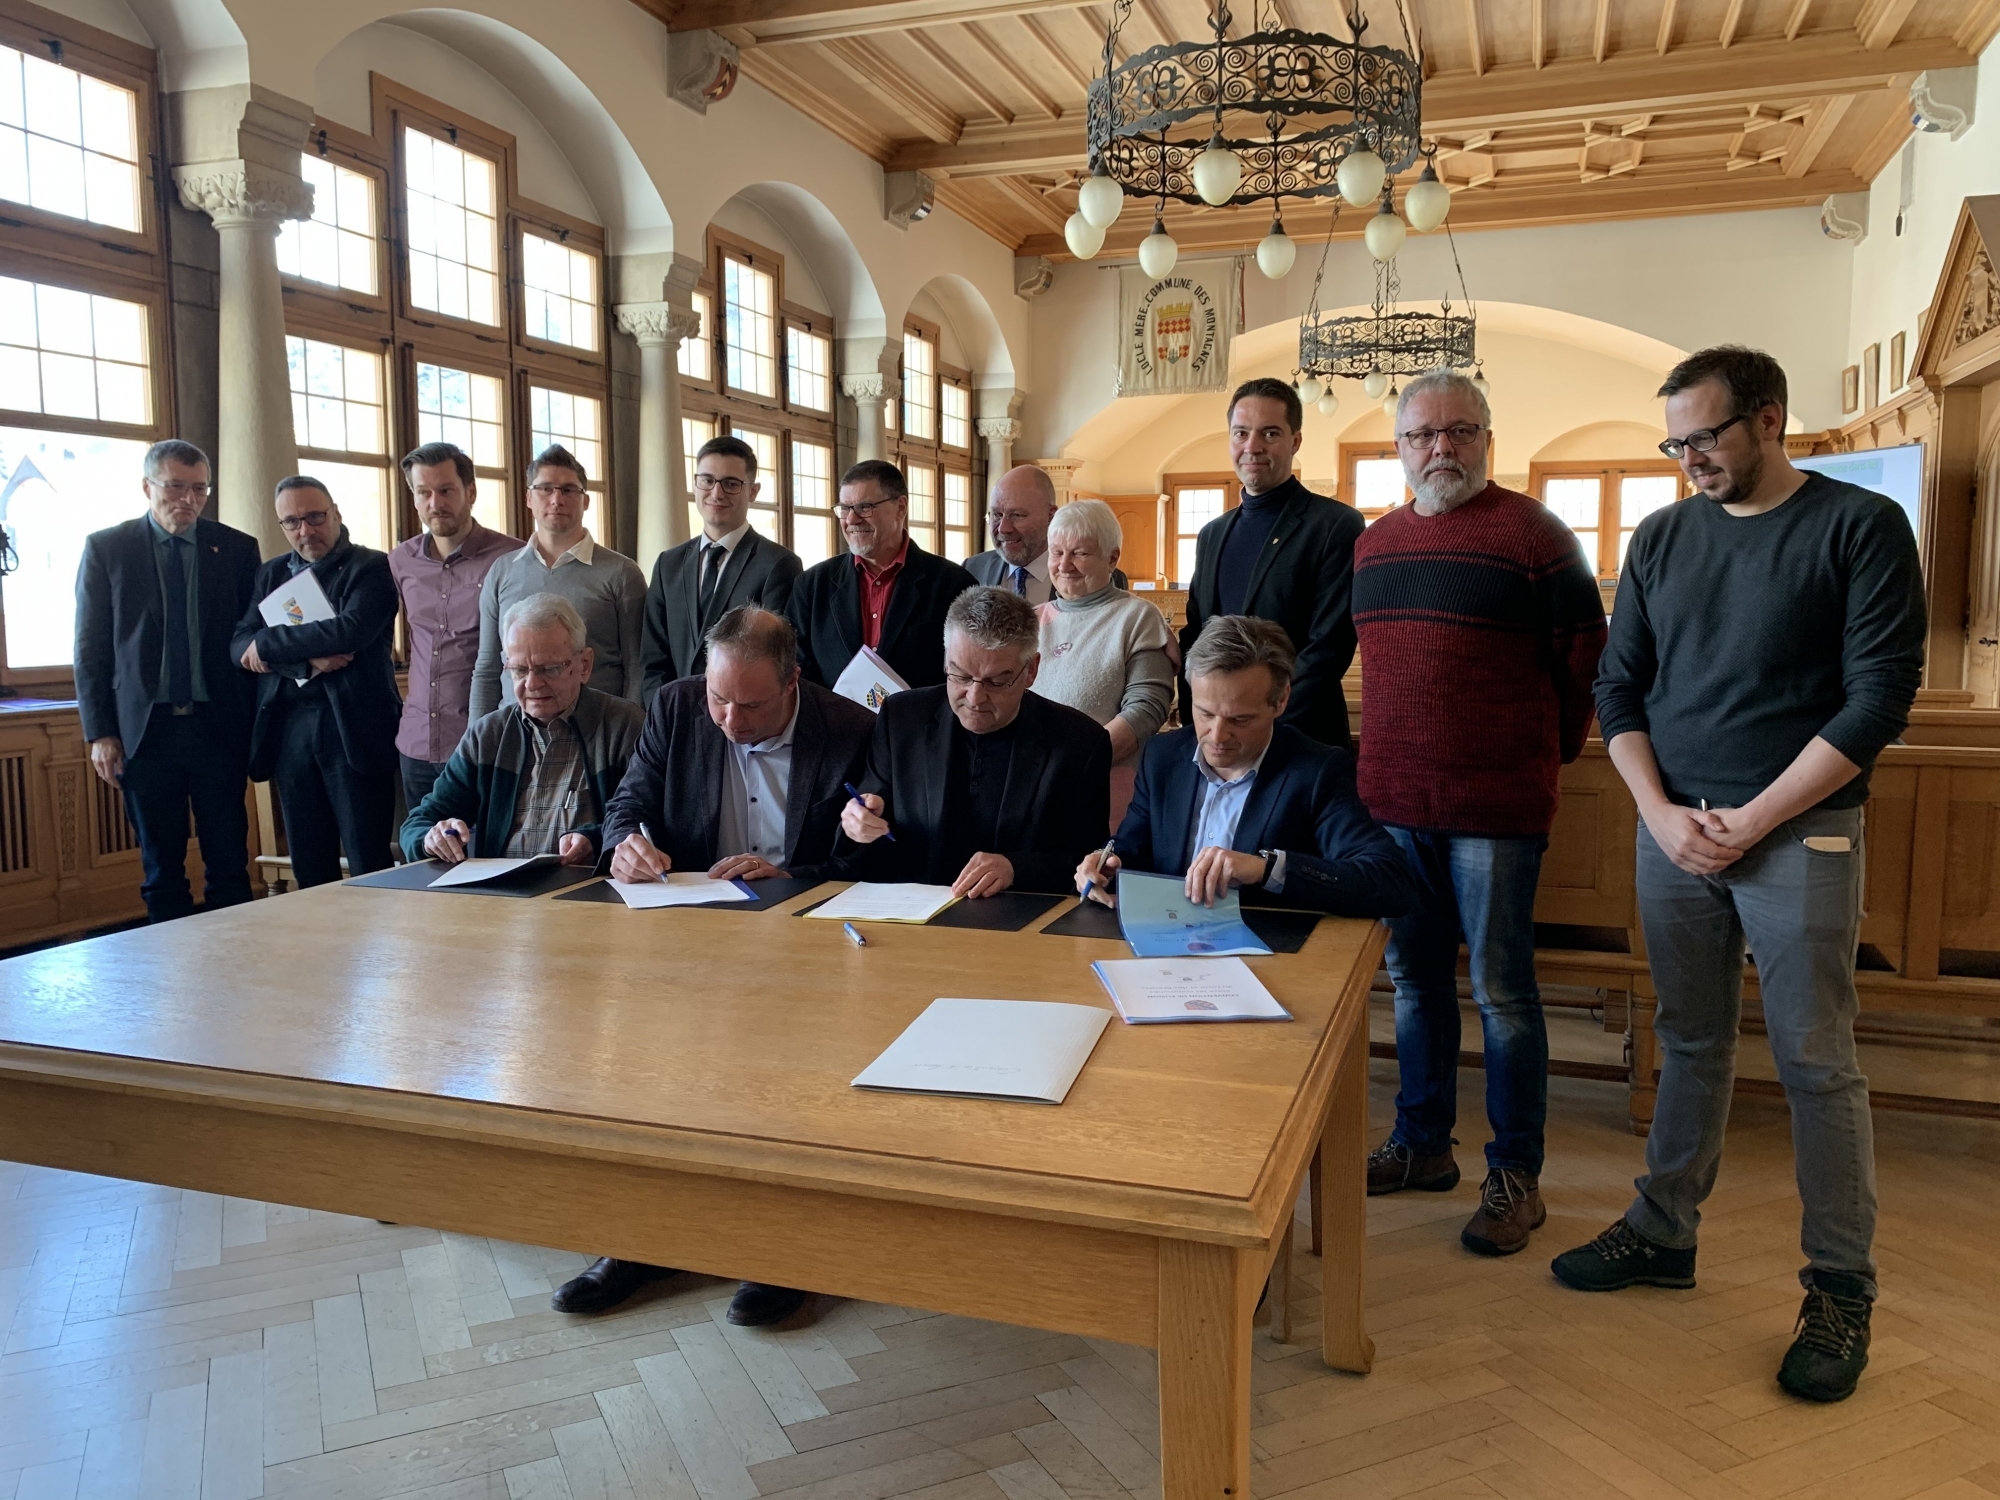 Les exécutifs du Locle et des Brenets ont signé la Convention de fusion entre les deux communes ce mercredi.